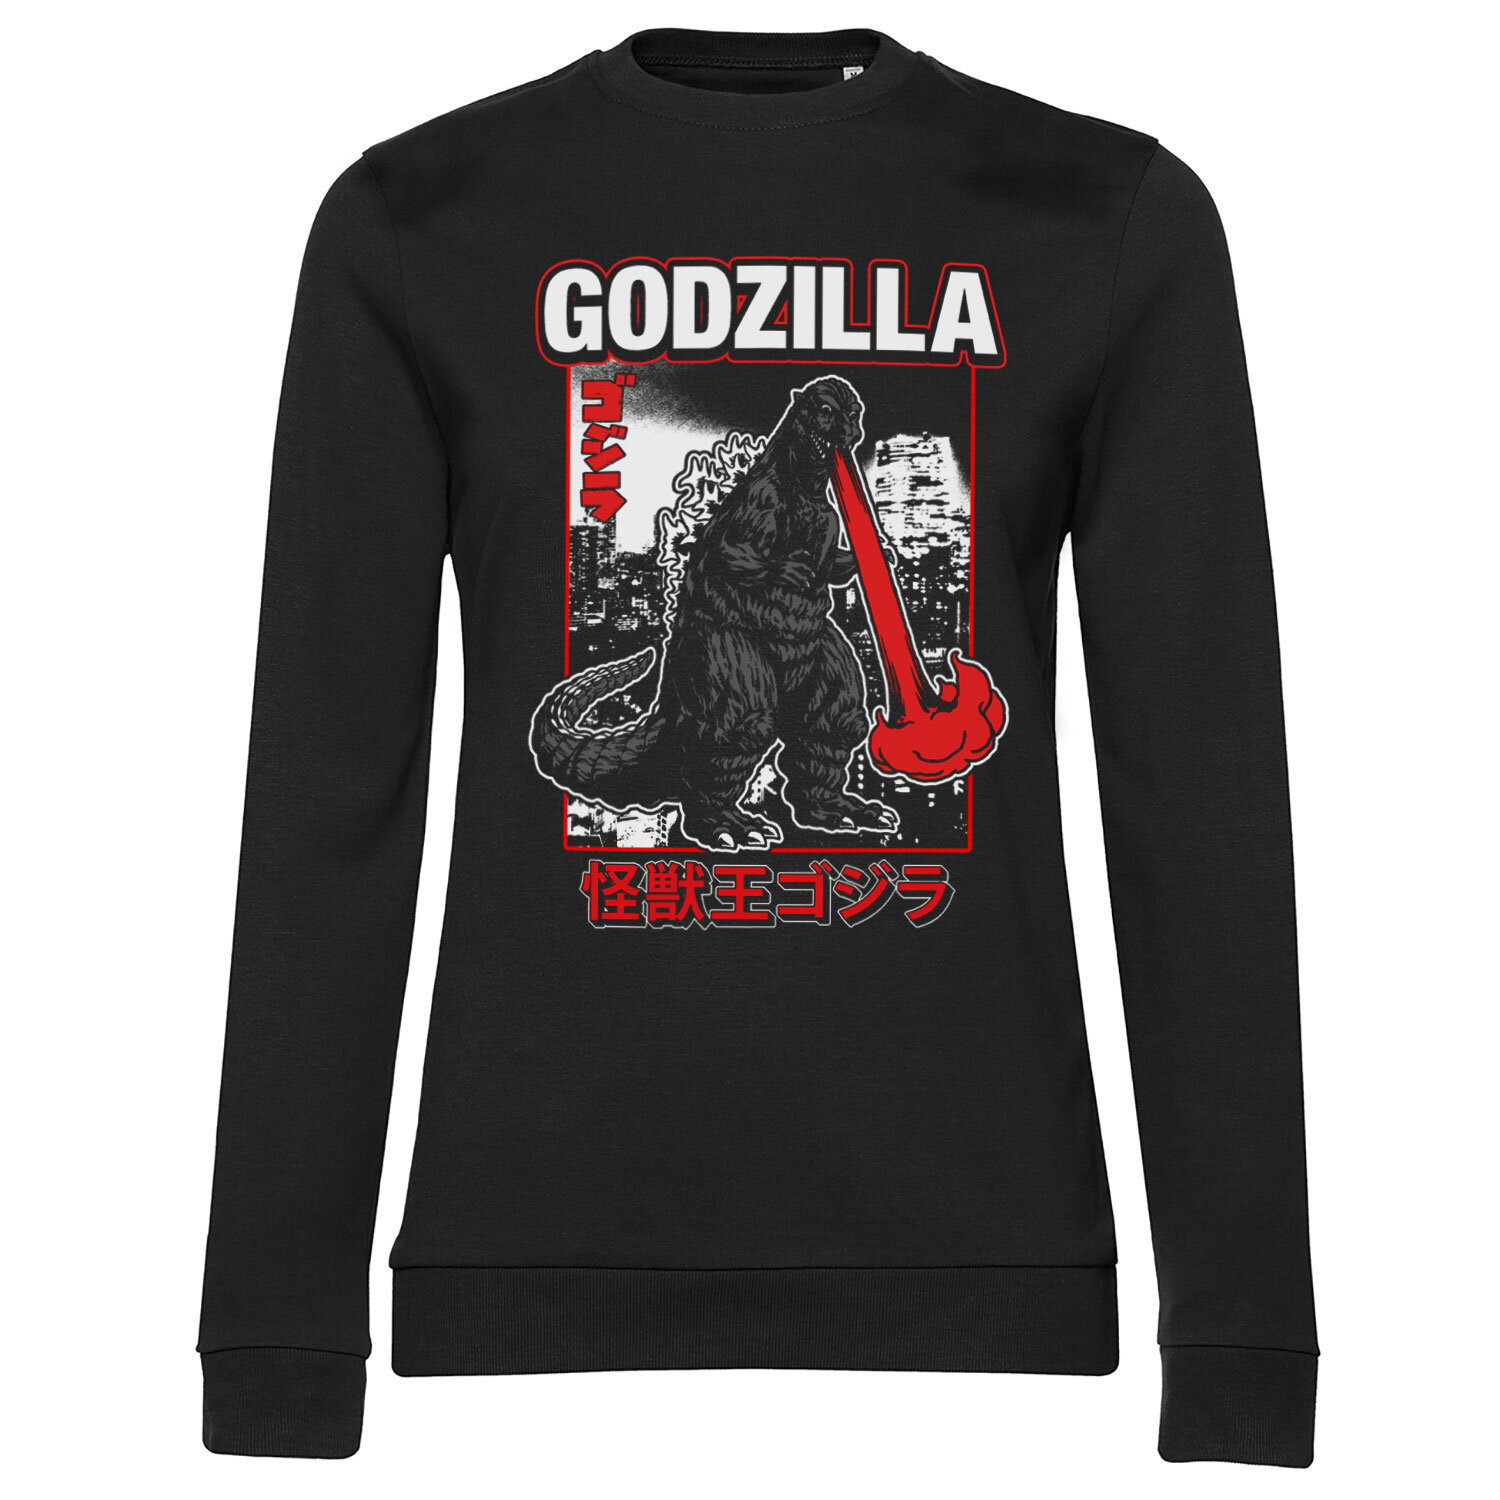 Godzilla - Atomic Breath Girly Sweatshirt